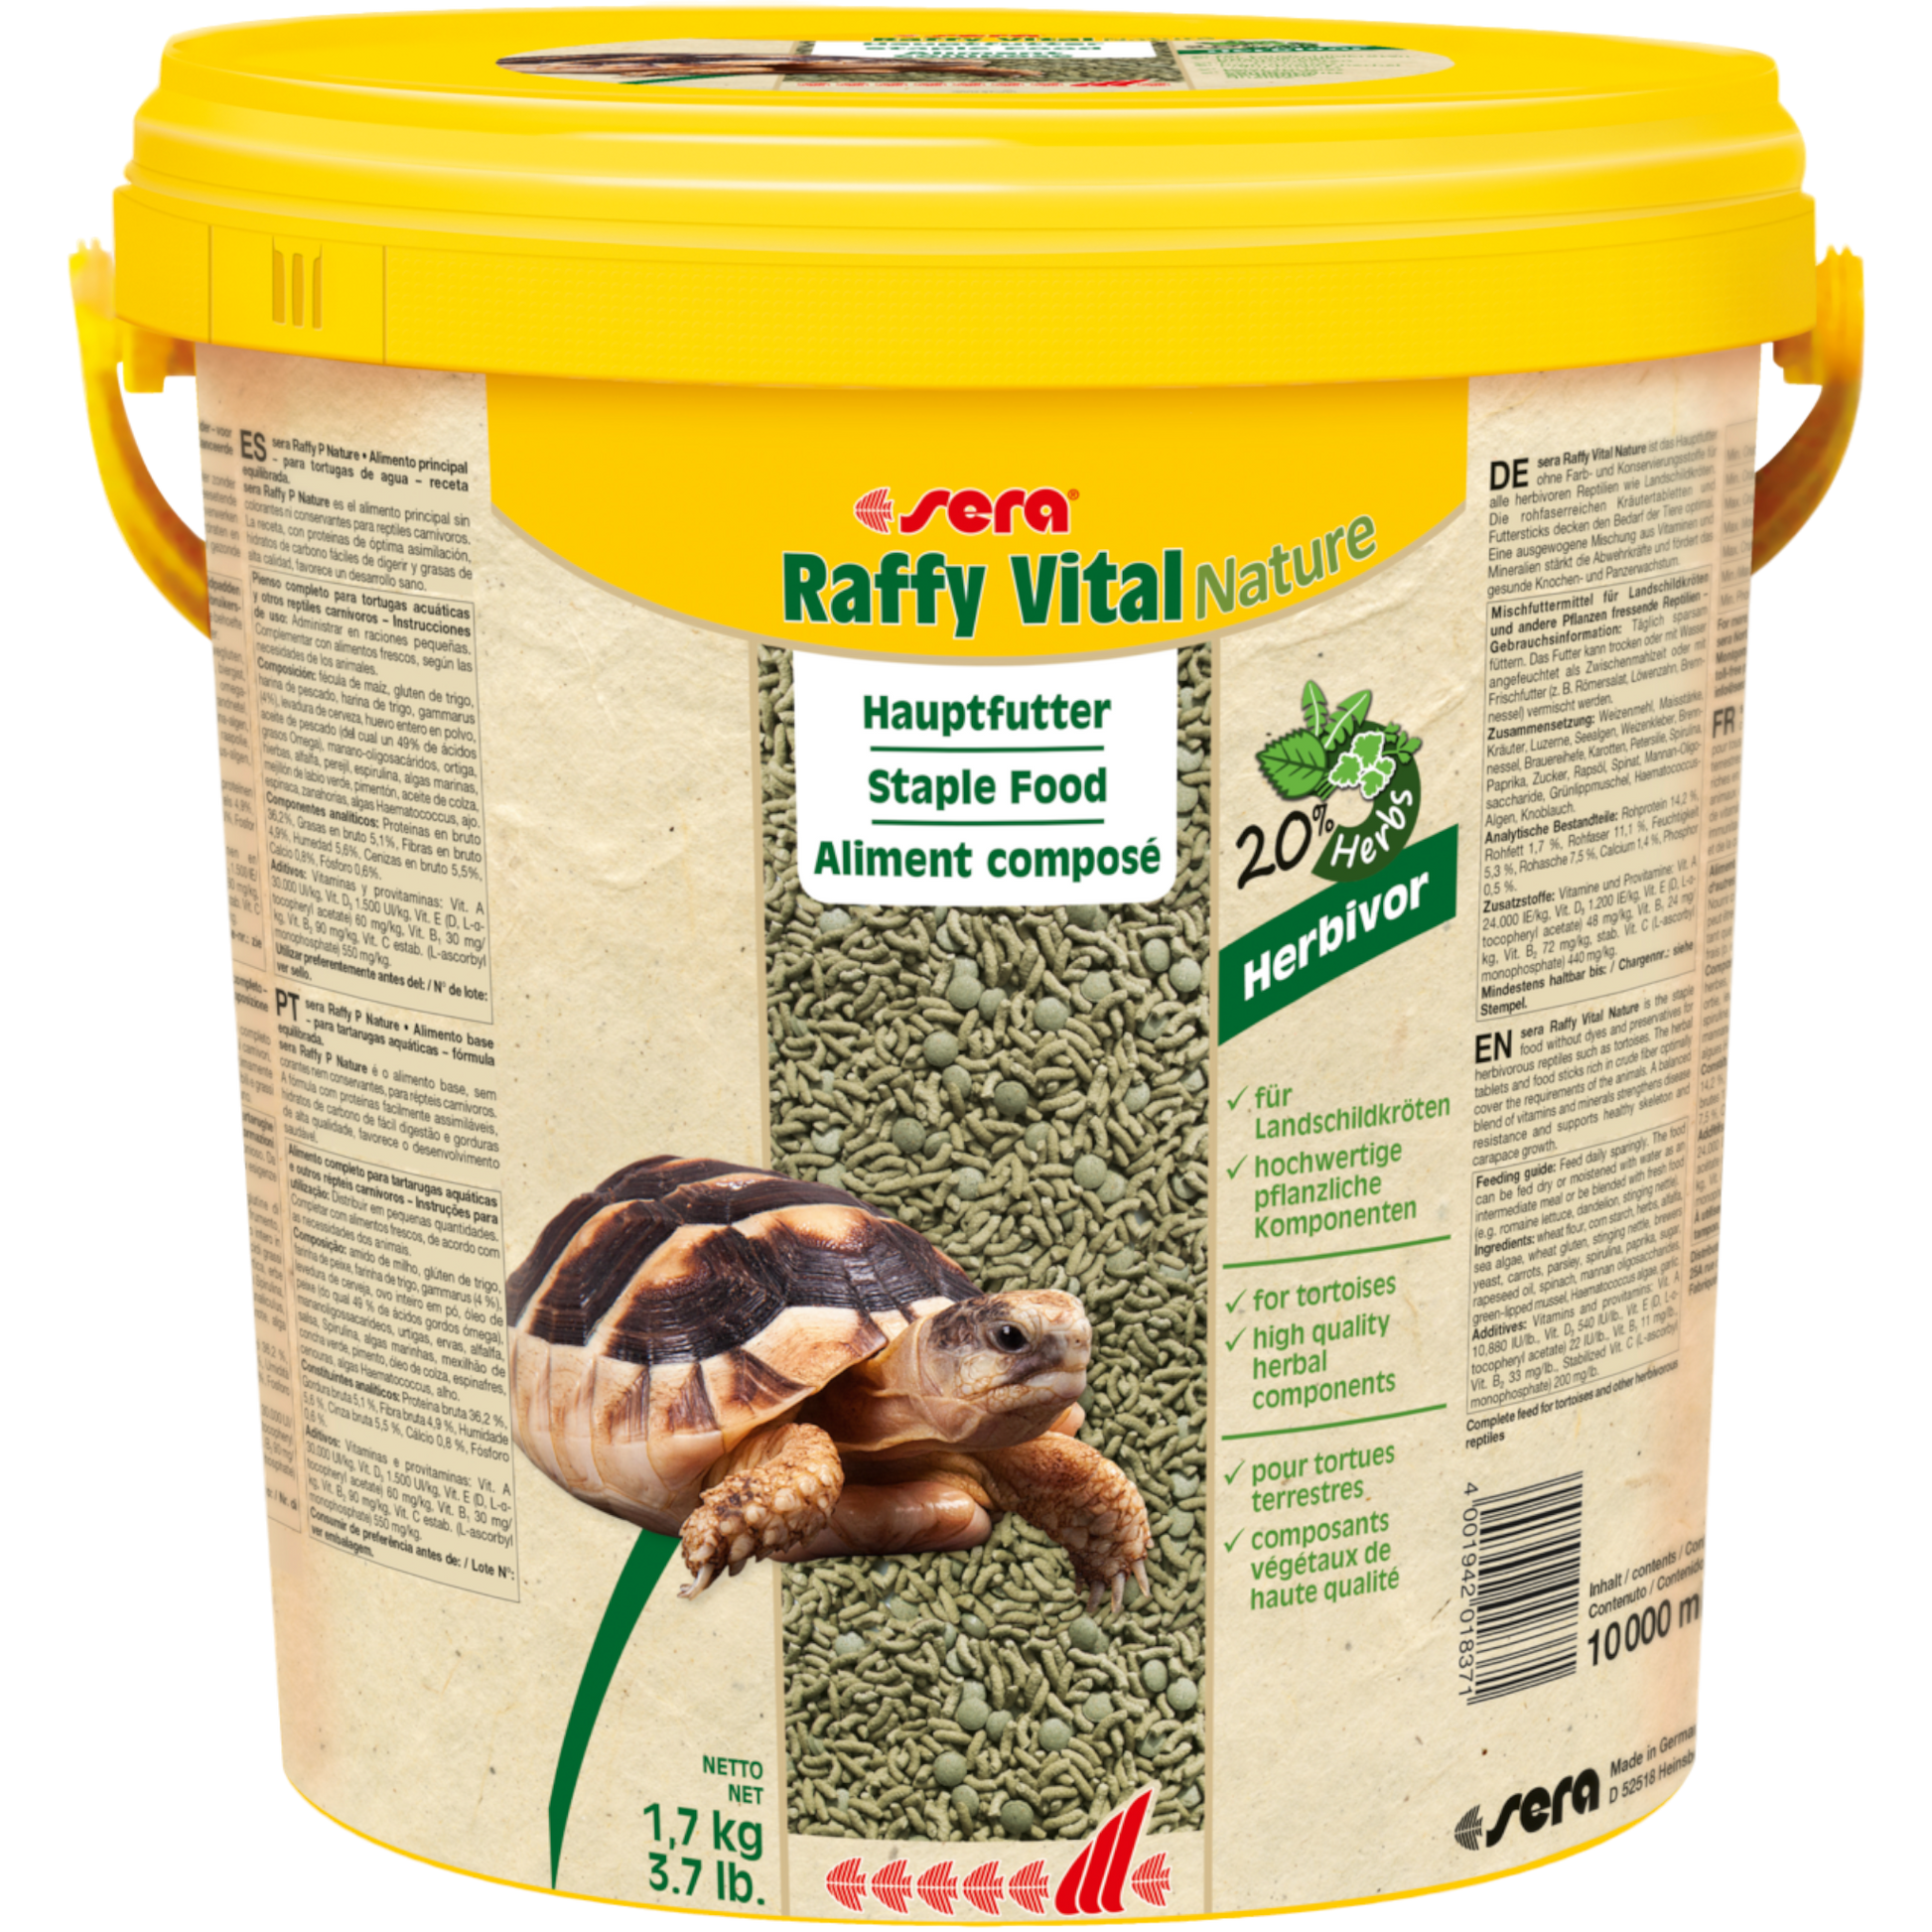 sera Raffy Vital Nature ist das Hauptfutter ohne Farb- und Konservierungsstoffe aus schonend hergestellten Sticks und Kräutertabletten für Landschildkröten und alle anderen herbivoren Reptilien.